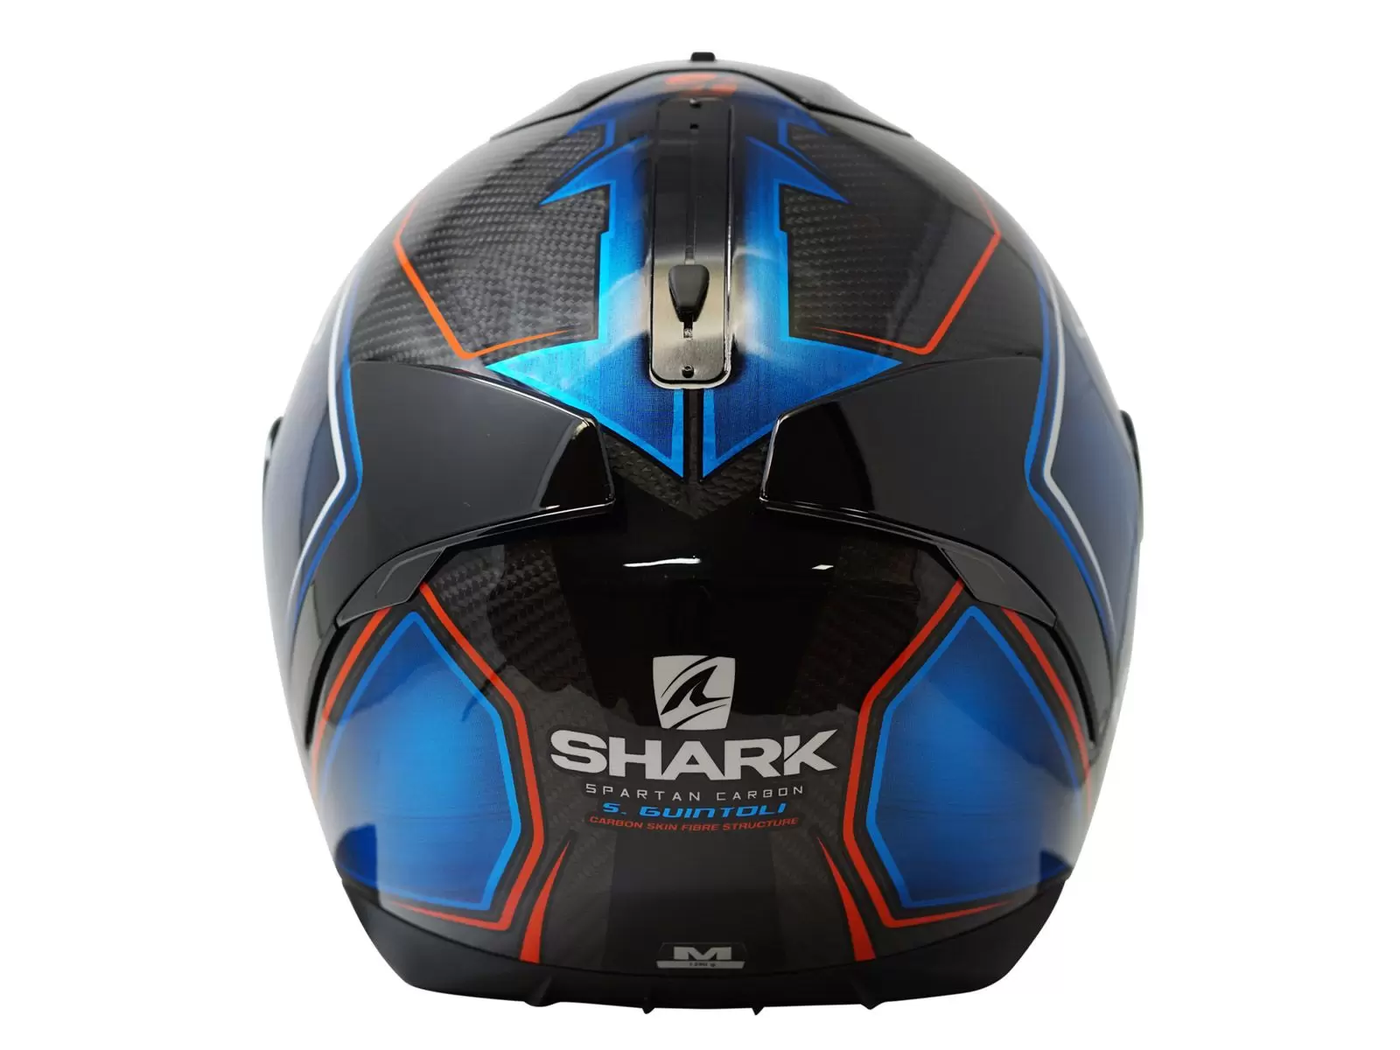 Shark Spartan Carbon Guintoli Replica Blue Red vue arrière